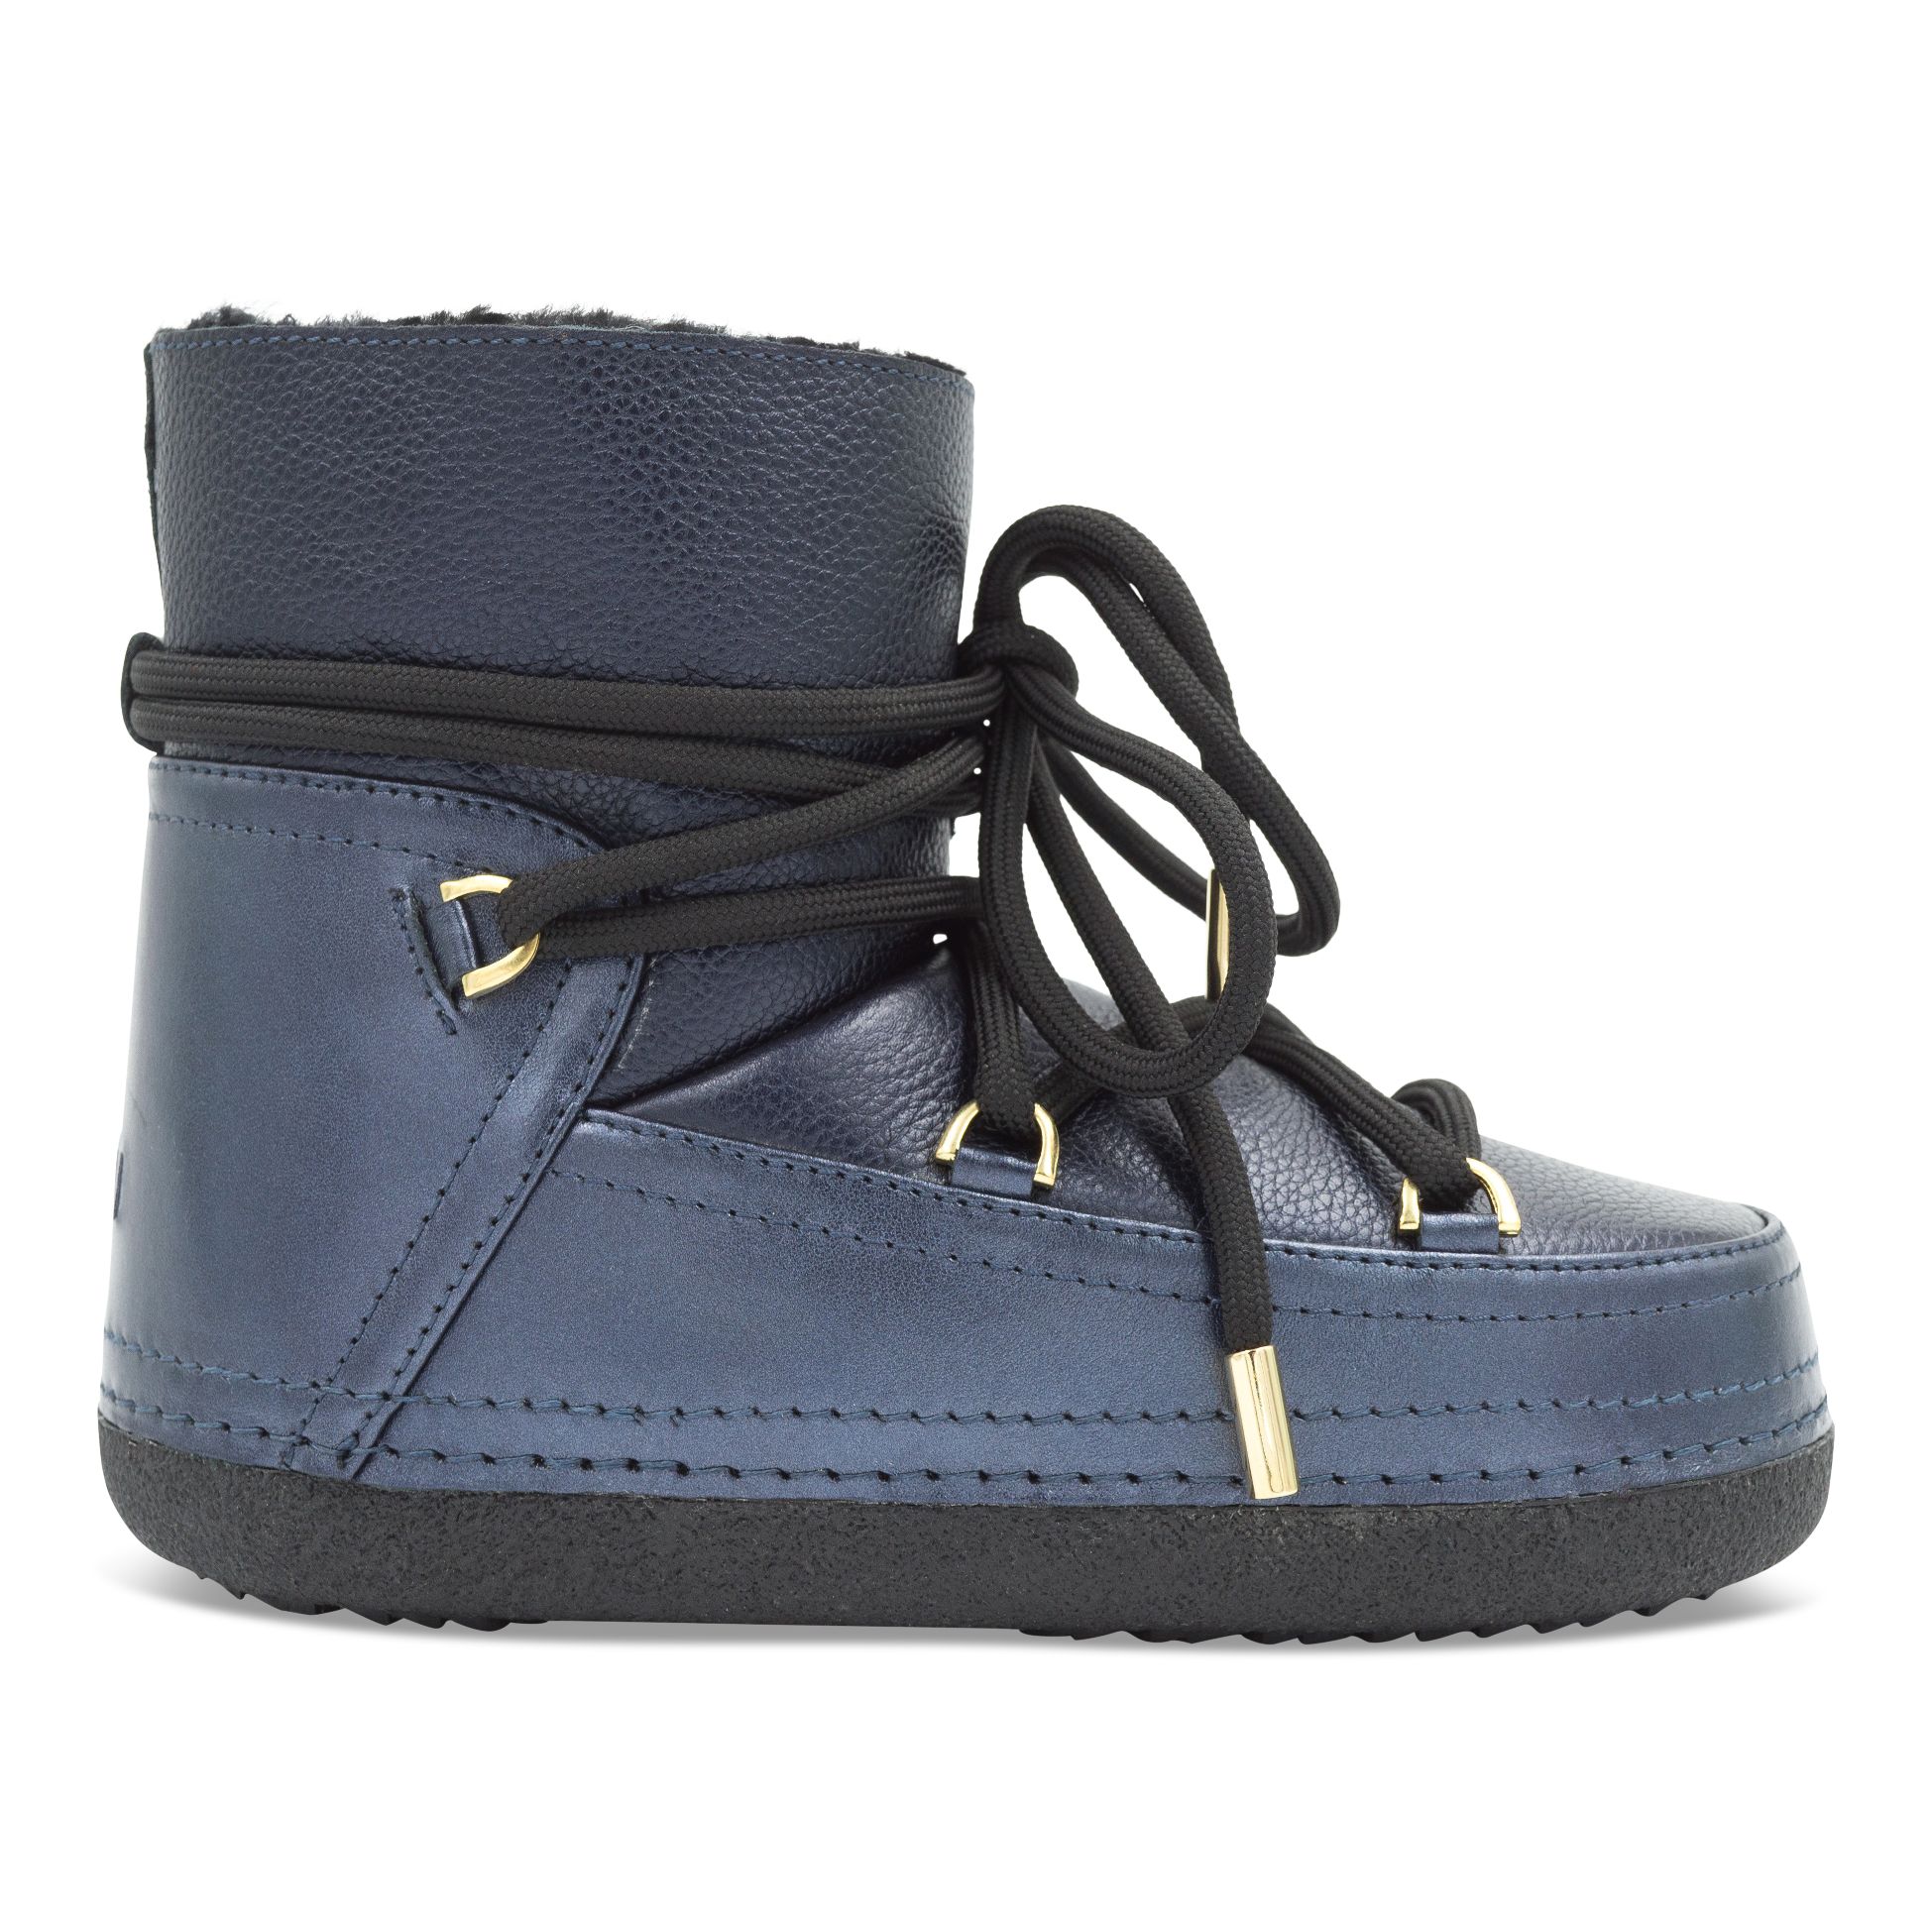 Incaltaminte De Iarna -  inuikii Boot Leather Night Blue